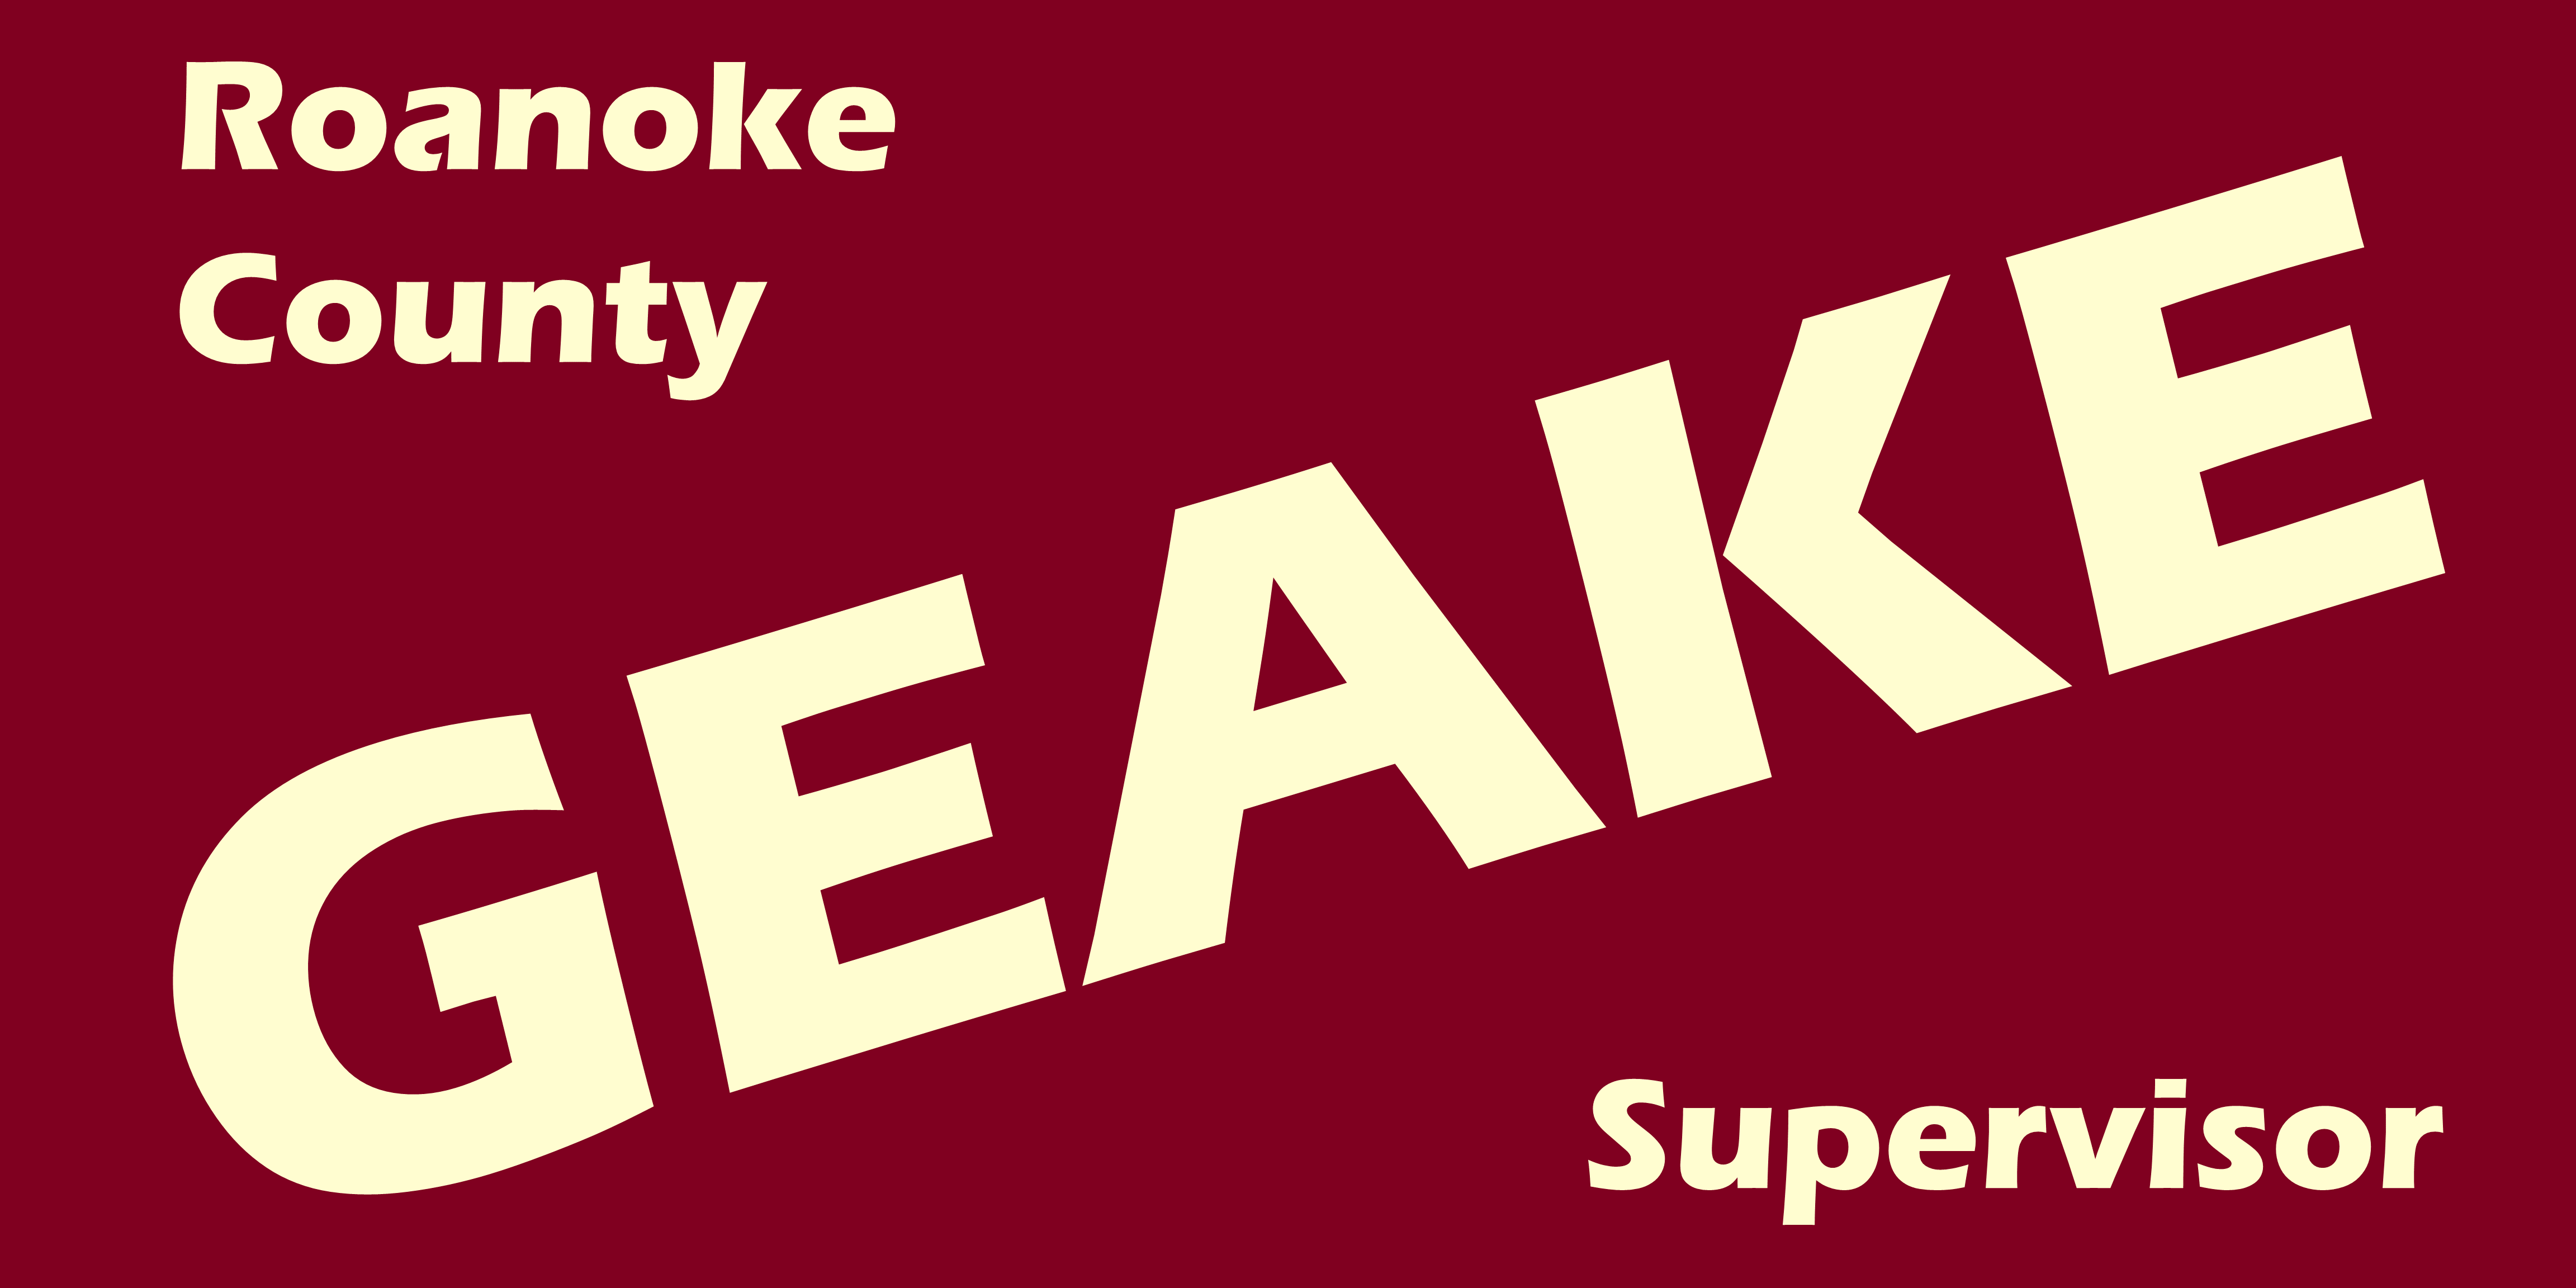 Geake for Roanoke County Supervisor